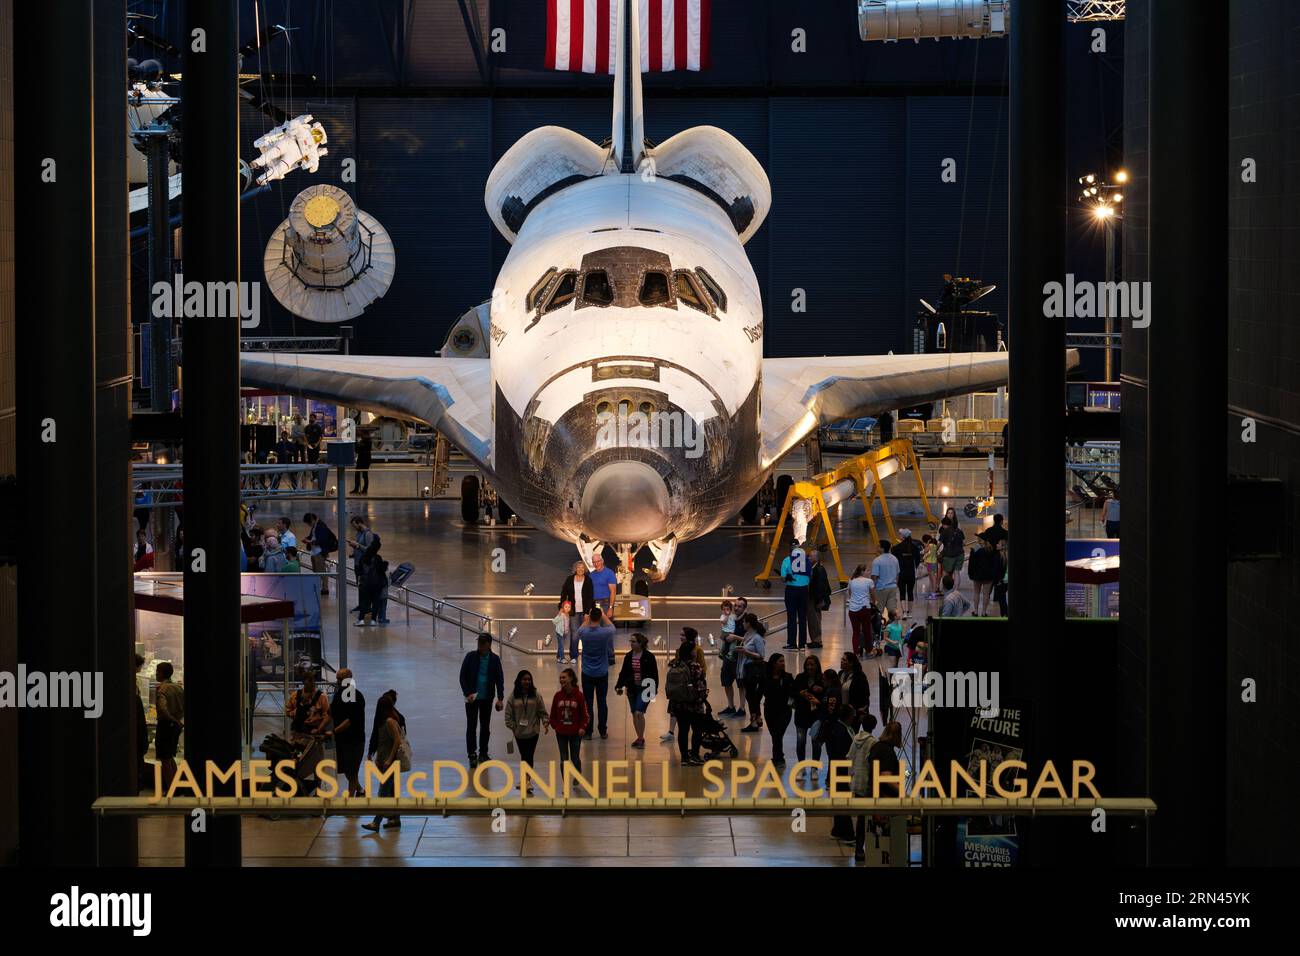 CHANTILLY, Virginie, États-Unis — la navette spatiale Discovery est exposée au Udvar-Hazy Center, une annexe du Smithsonian National Air and Space Museum. En tant qu'une des navettes phares de la NASA, Discovery a effectué 39 missions plus de 27 ans avant son départ à la retraite. Banque D'Images